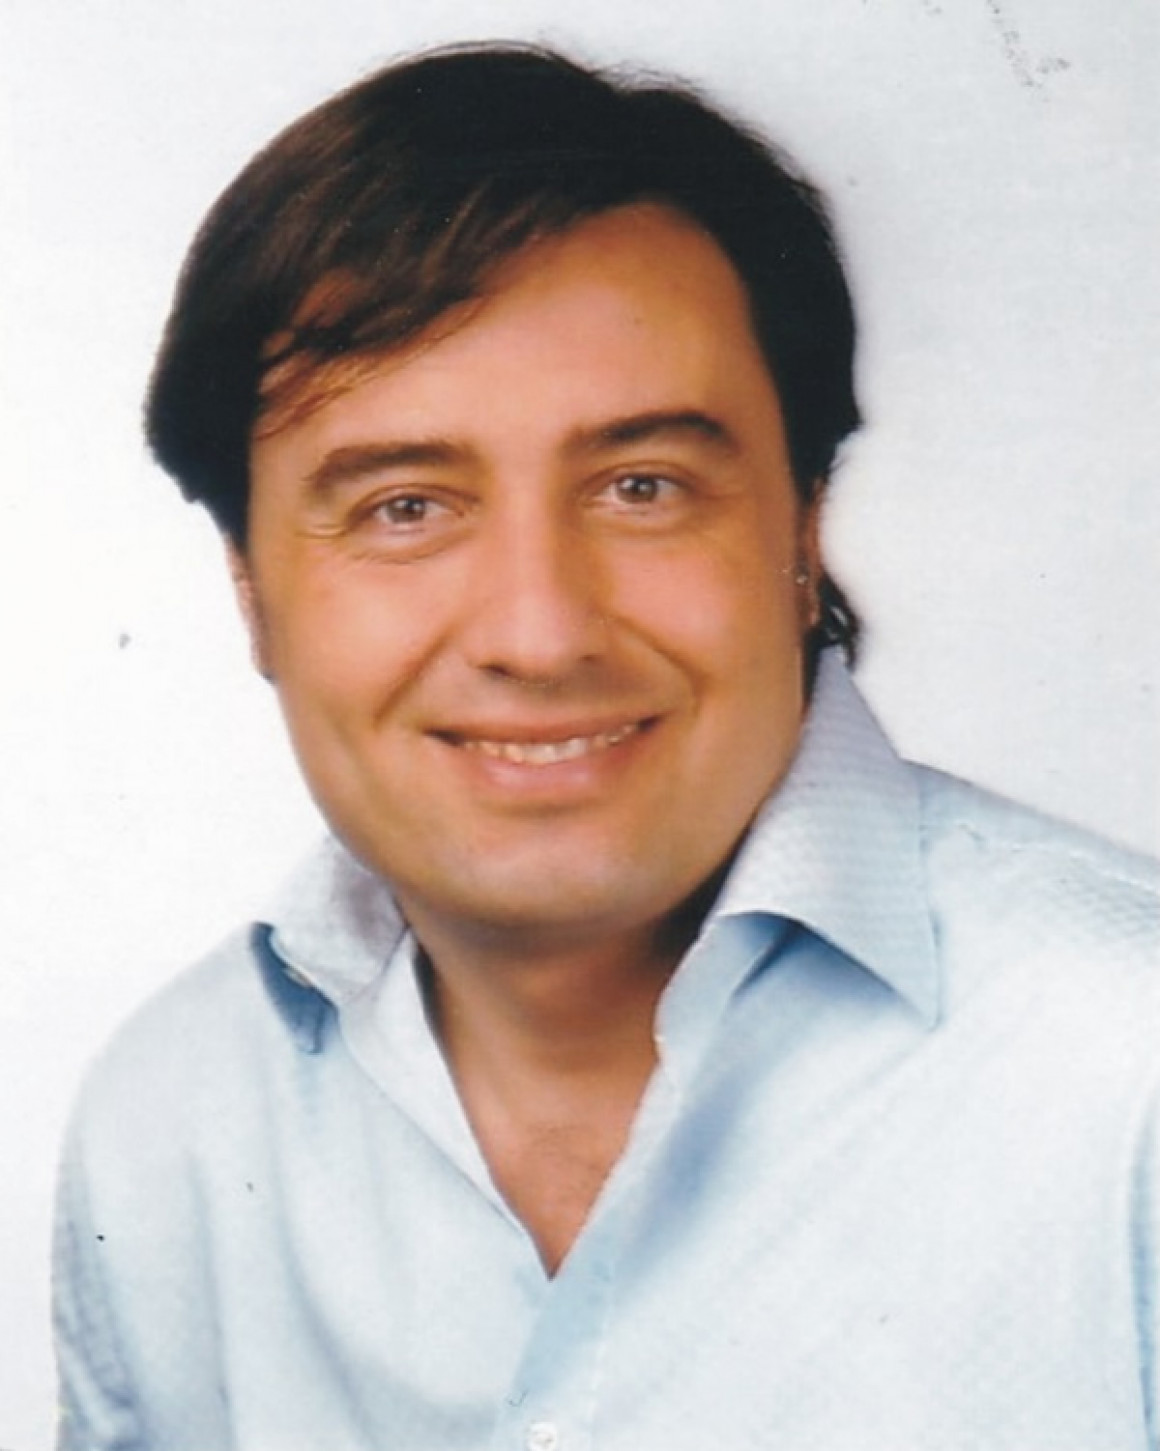 Michele Silvano